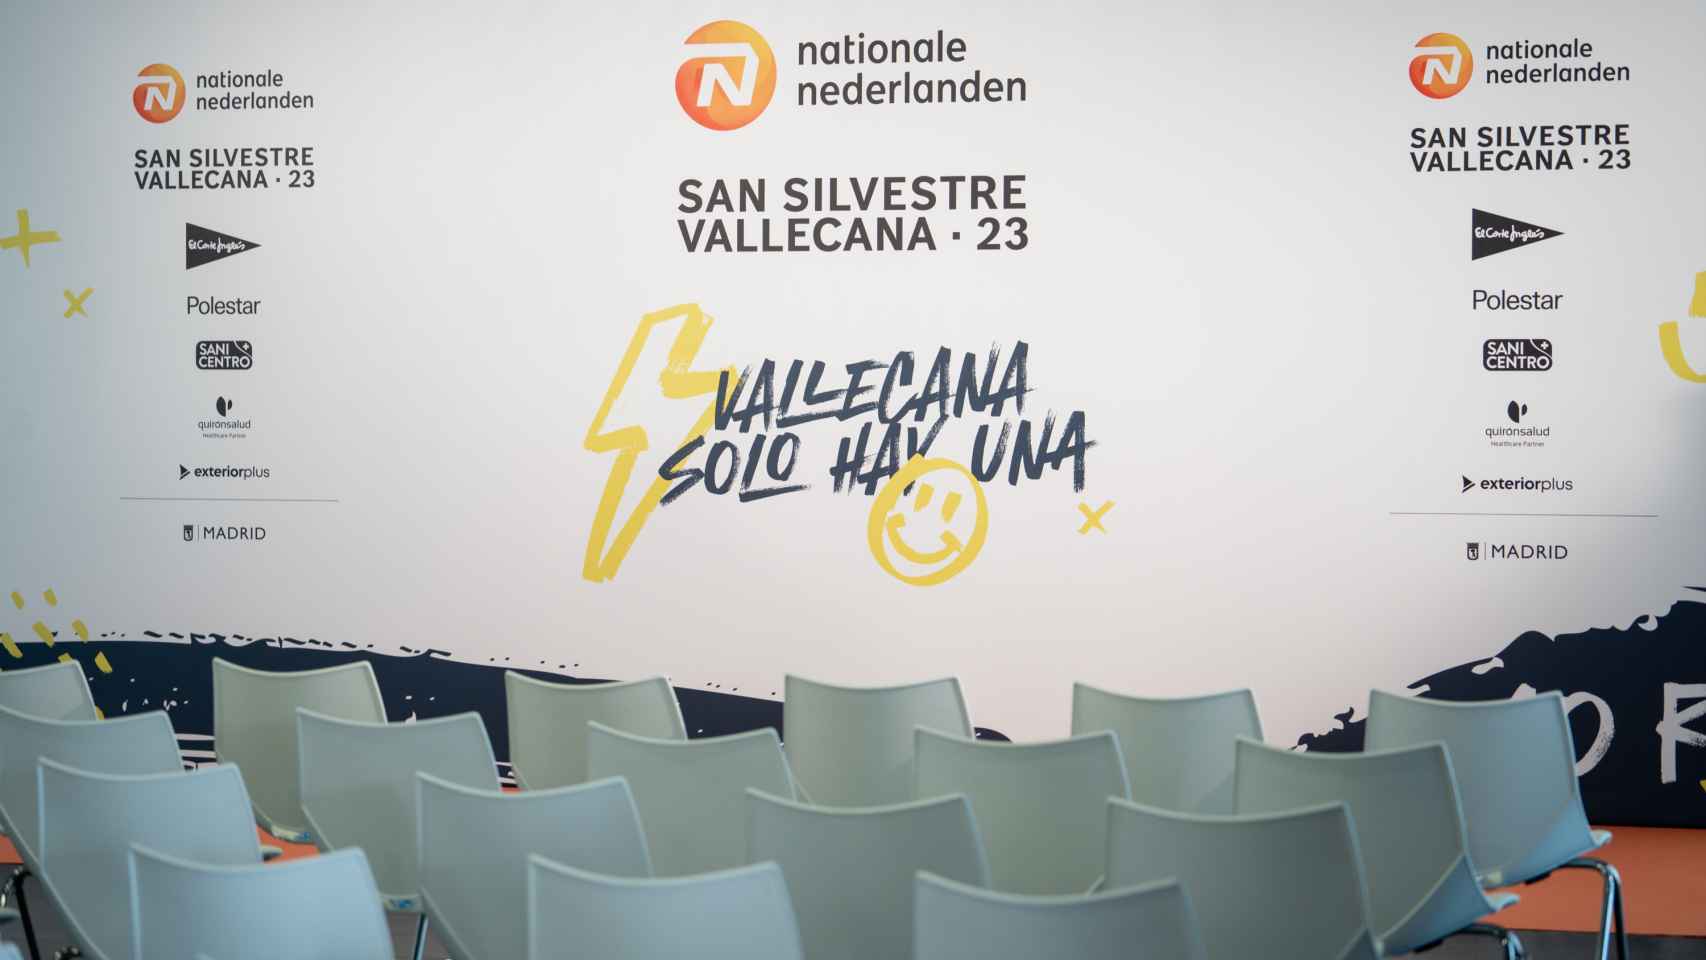 Nationale-Nederlanden San Silvestre Vallecana 2023